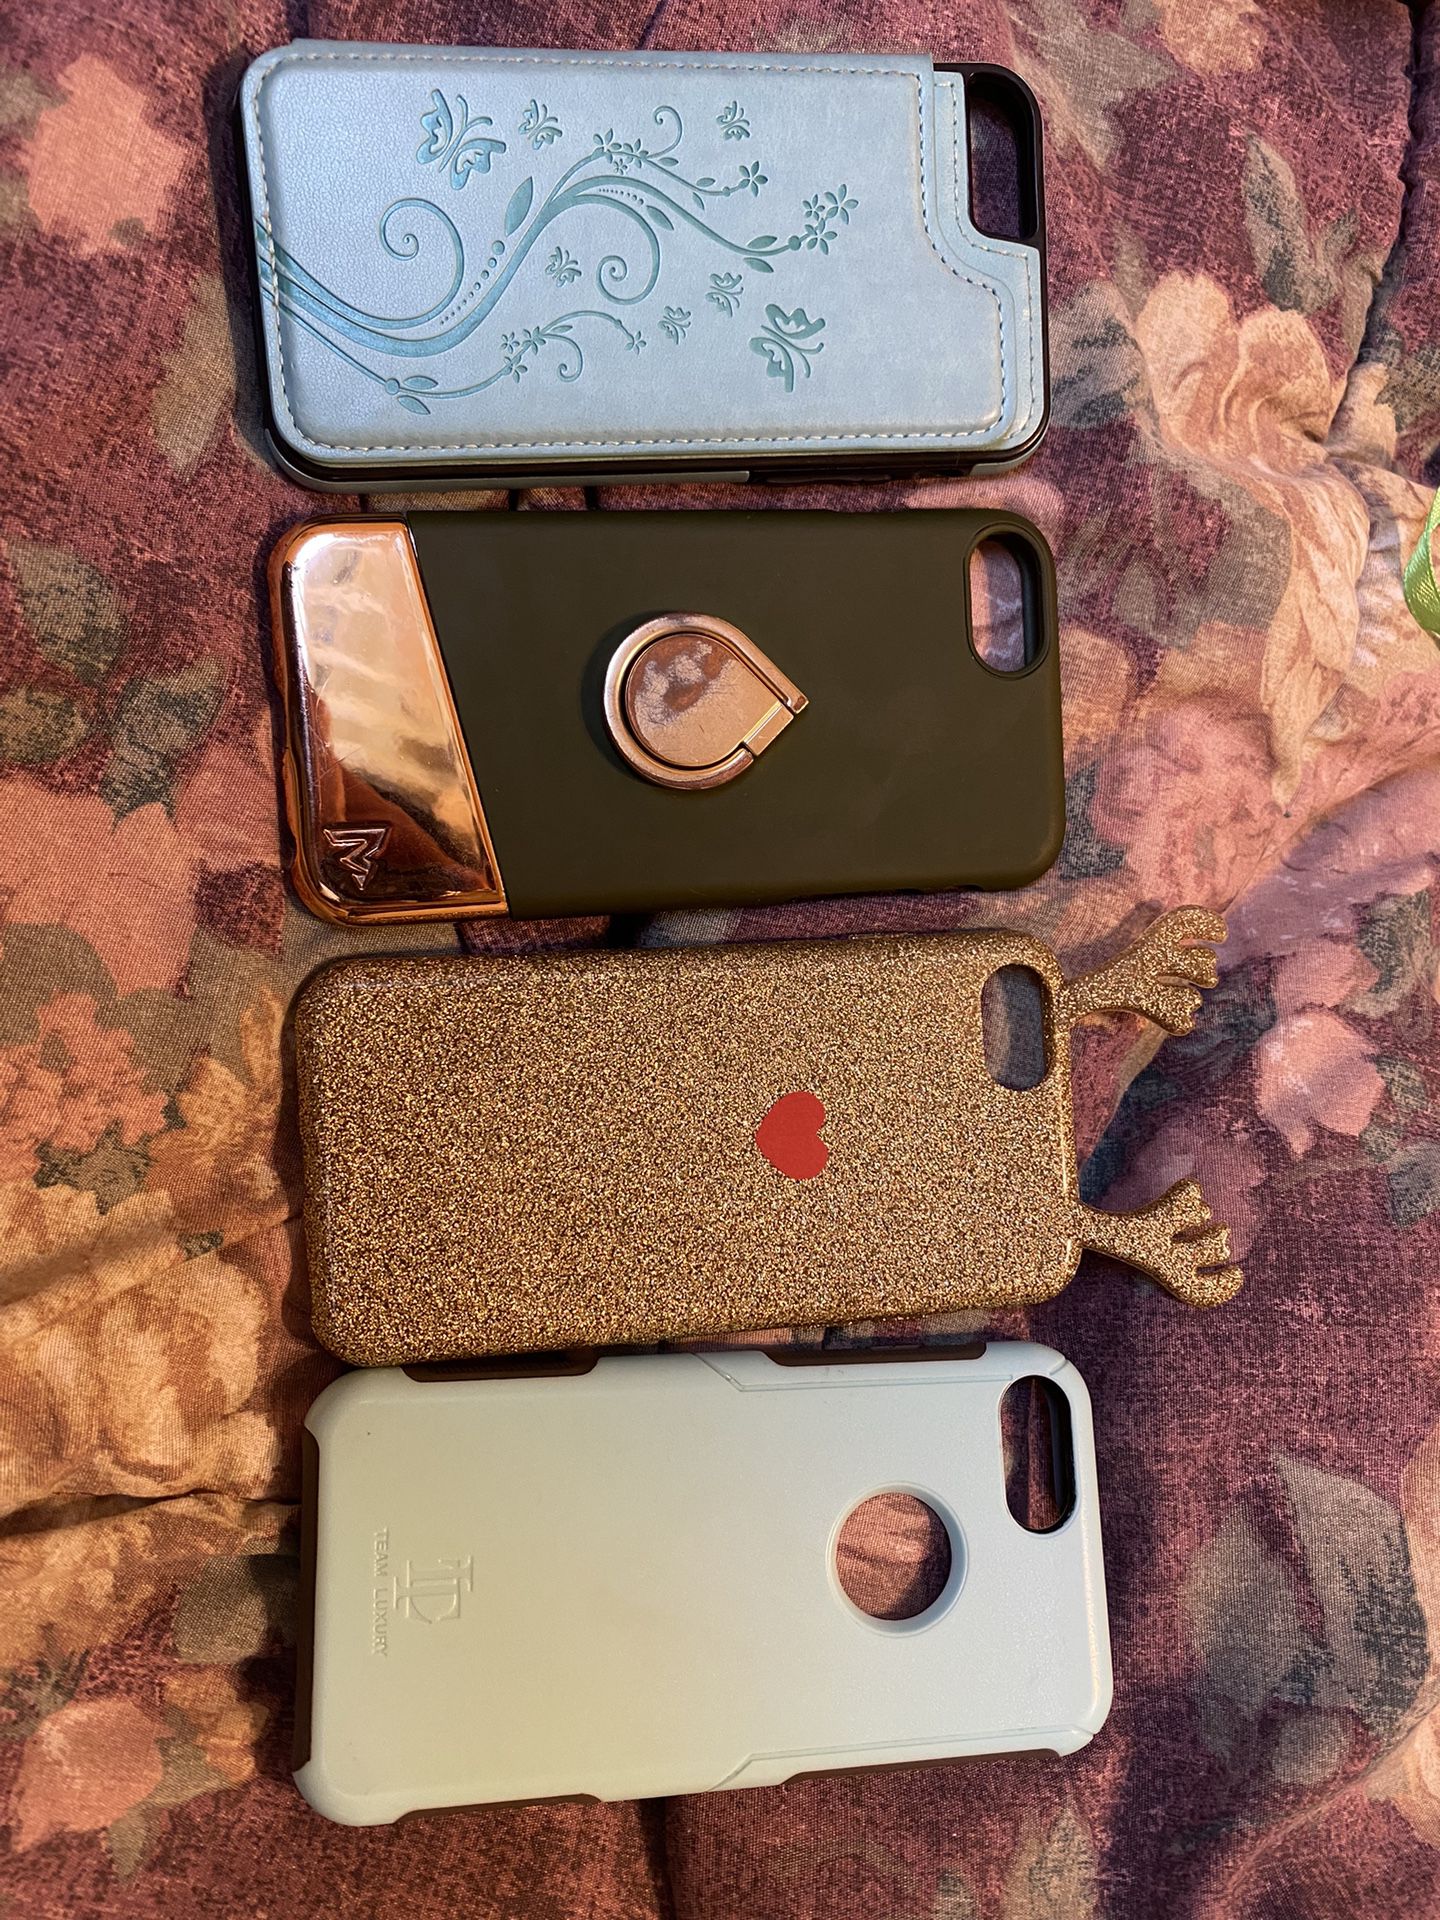 Iphone 7 Cases